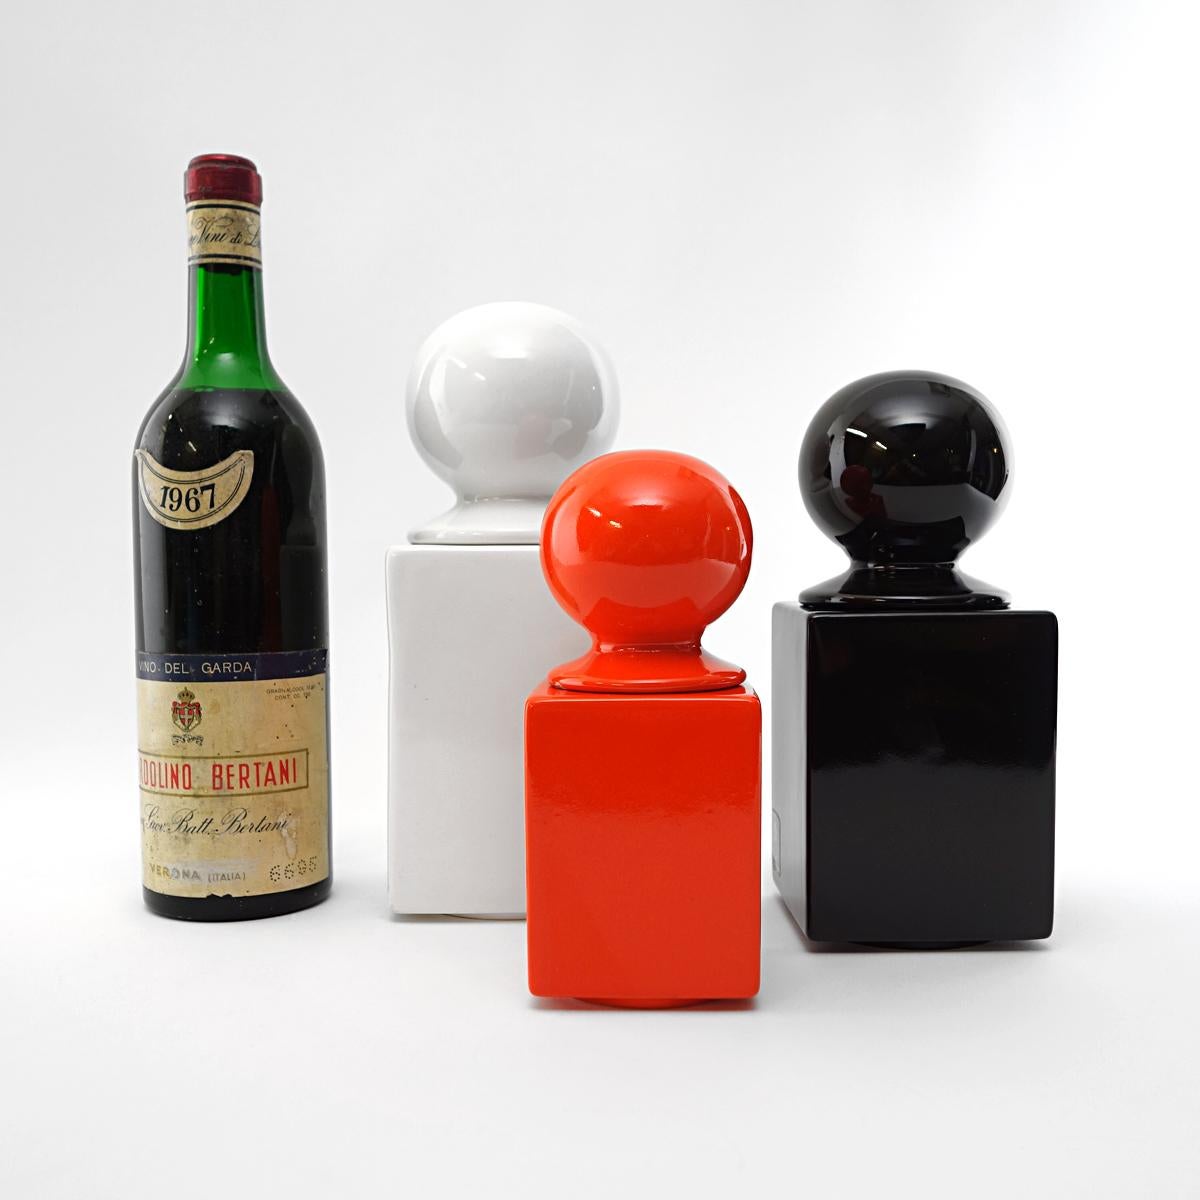 Satz von 10 Keramikdosen, entworfen von Pino Spagnolo für Sicart. 

Das Set besteht aus drei verschiedenen Farben: 4x schwarz, 2x weiß und 4x orange. 

Außerdem gibt es drei verschiedene Bände. Die kleinste (1x orange) ist 17,5 cm hoch, die